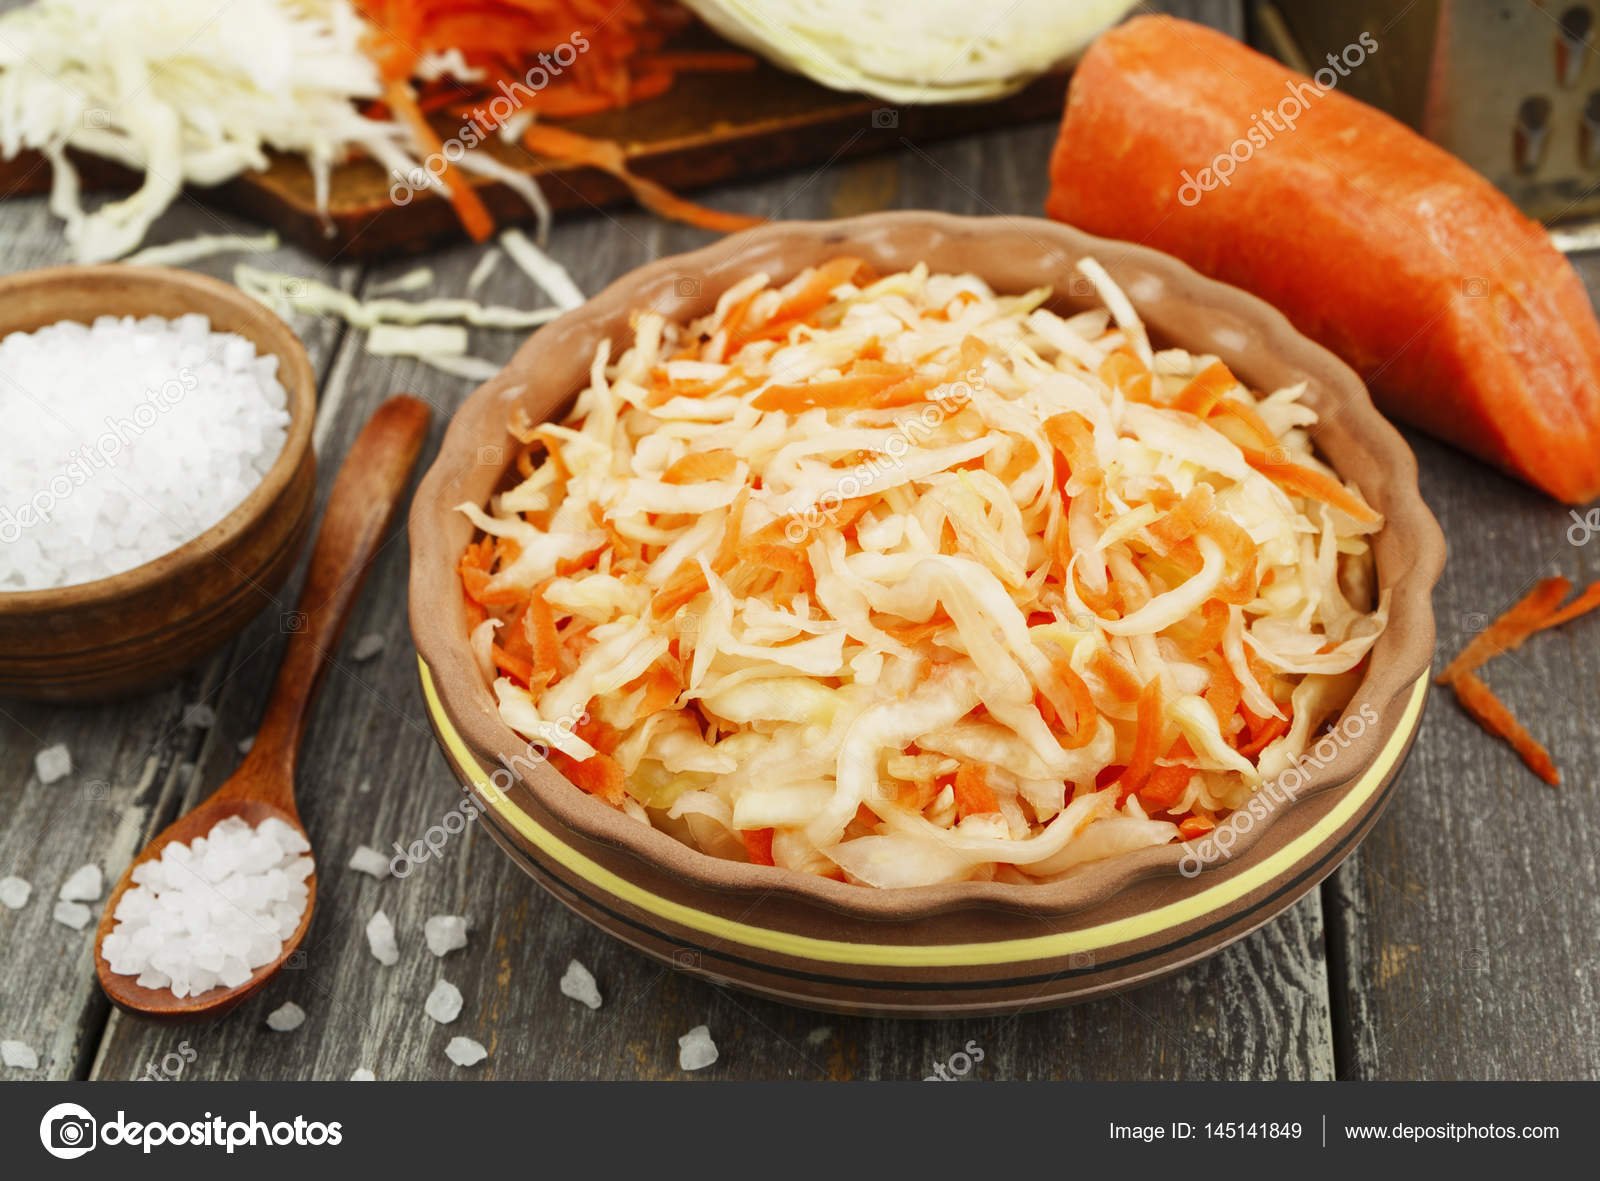 При поджелудочной можно квашеную капусту. Sauerkraut – квашеная капуста.. . Шома капуста (квашеная капуста). Квашеная капуста на тарелке. Капуста квашеная с морковью на тарелке.